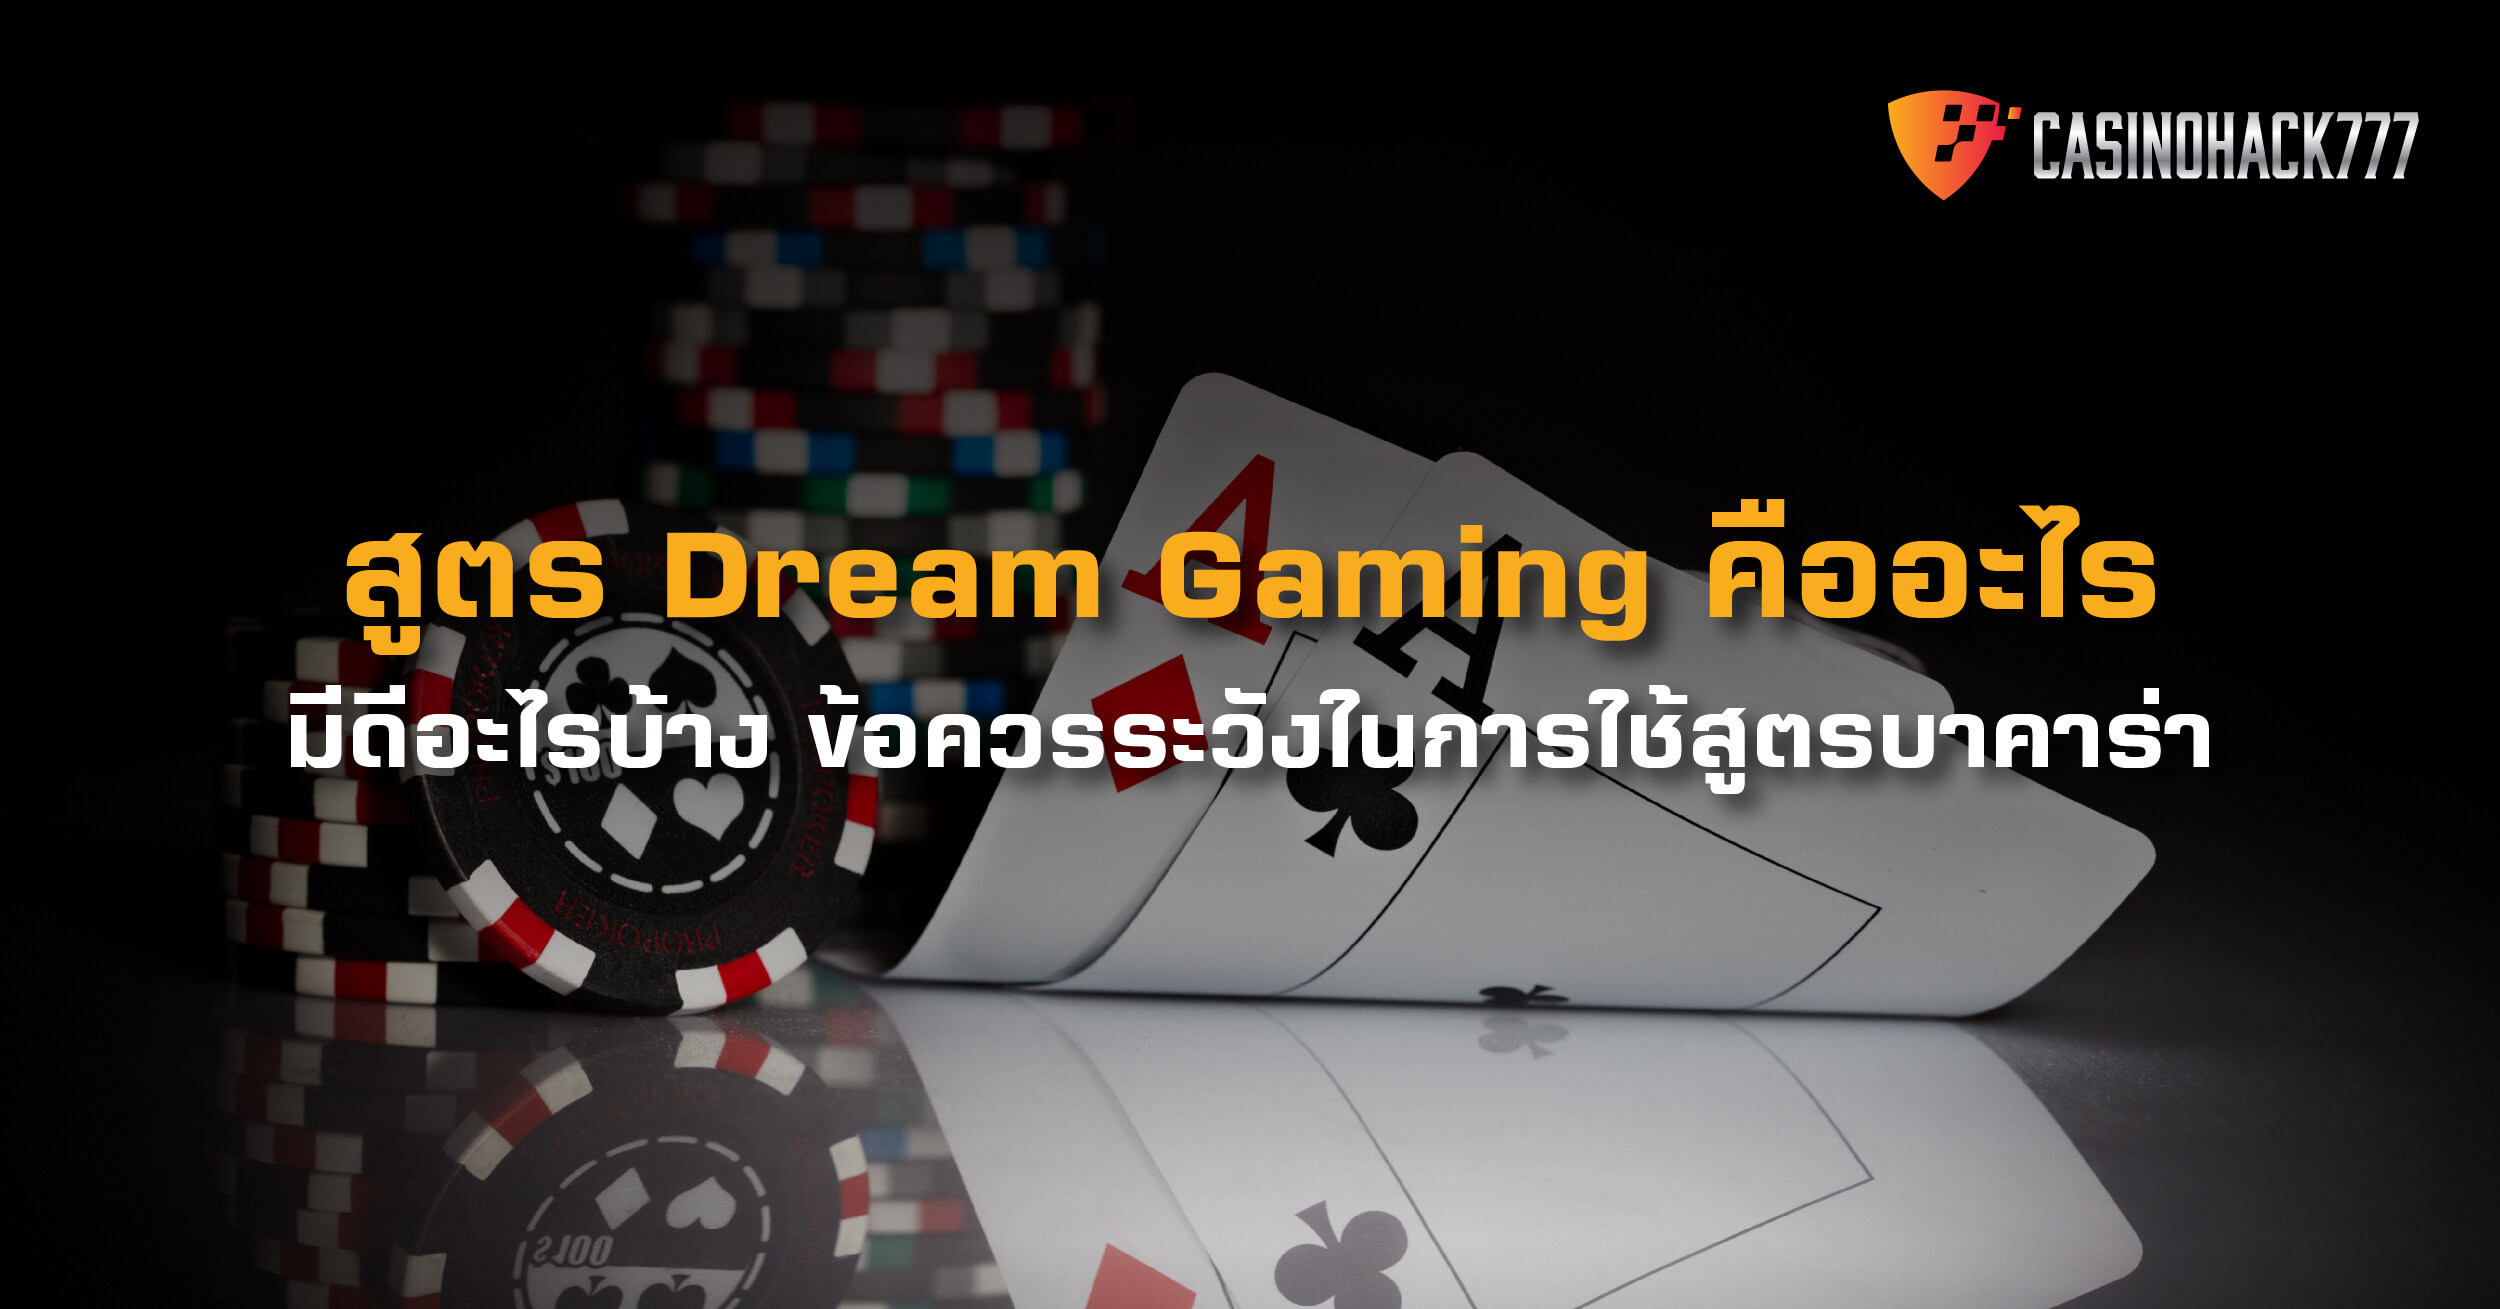 สูตร Dream Gaming - สูตรฟรี